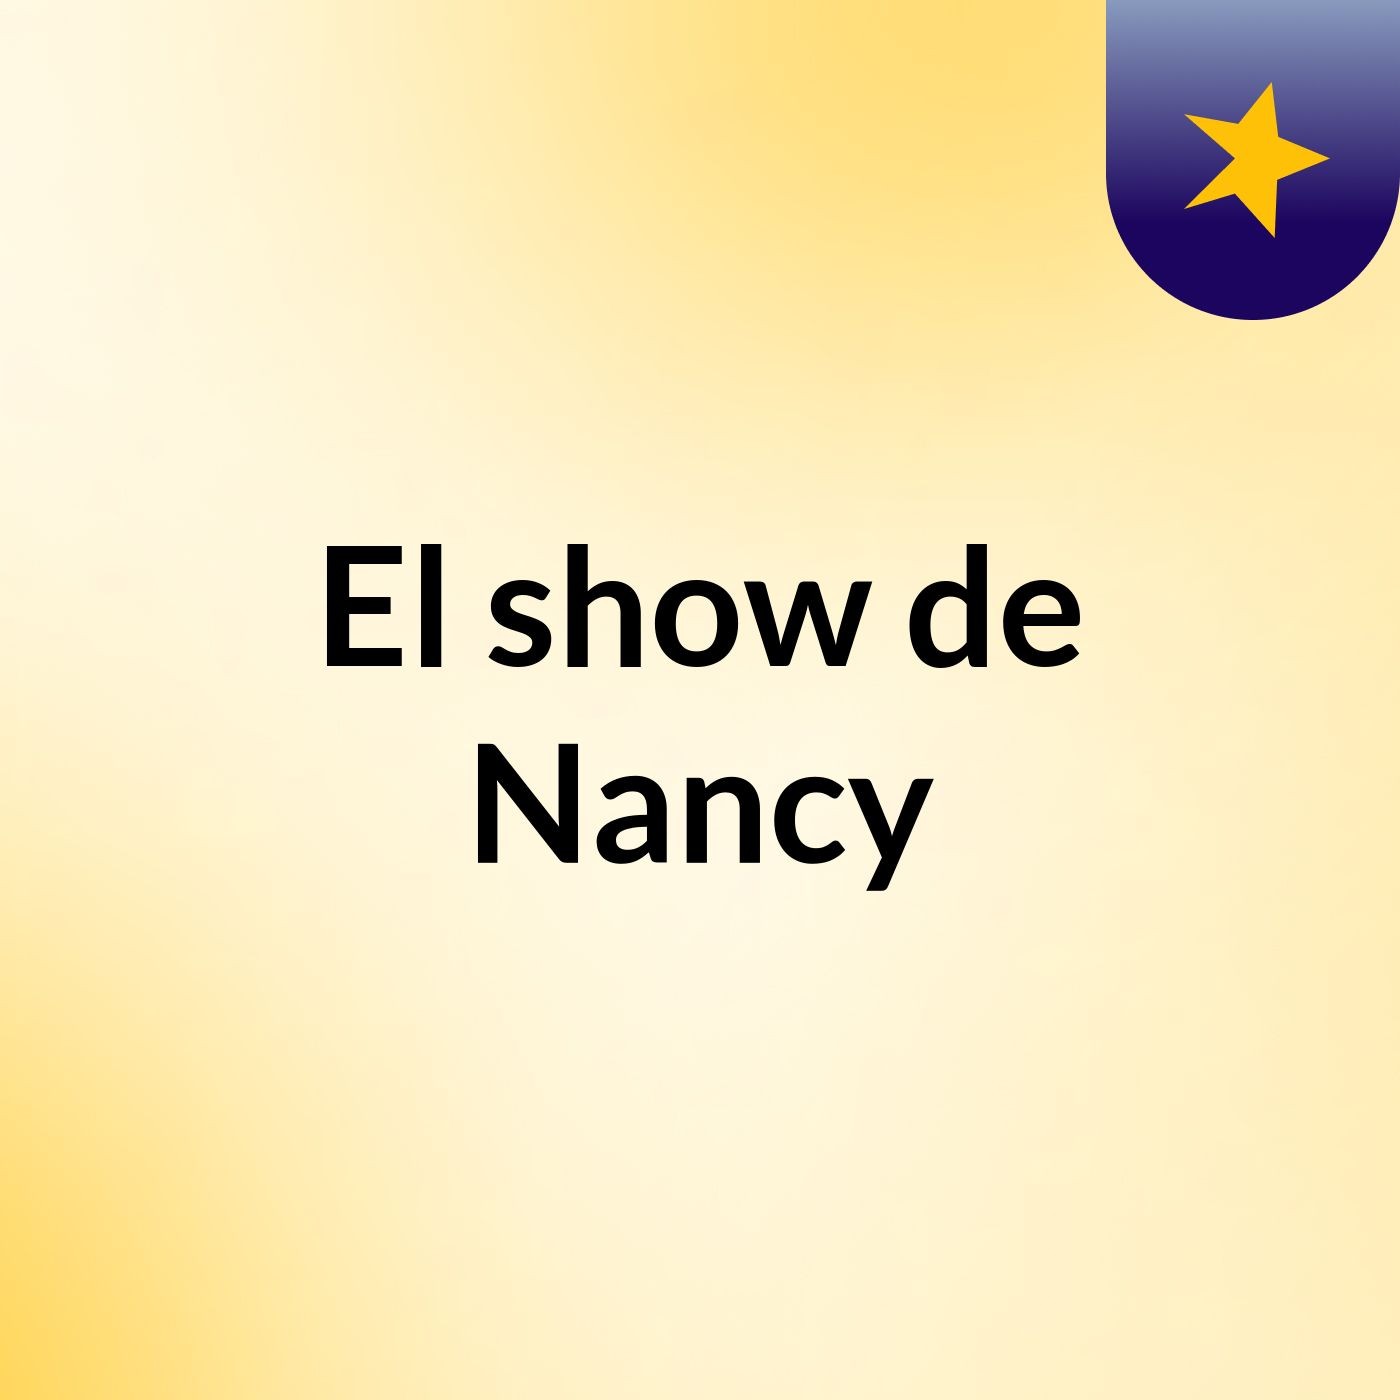 El show de Nancy